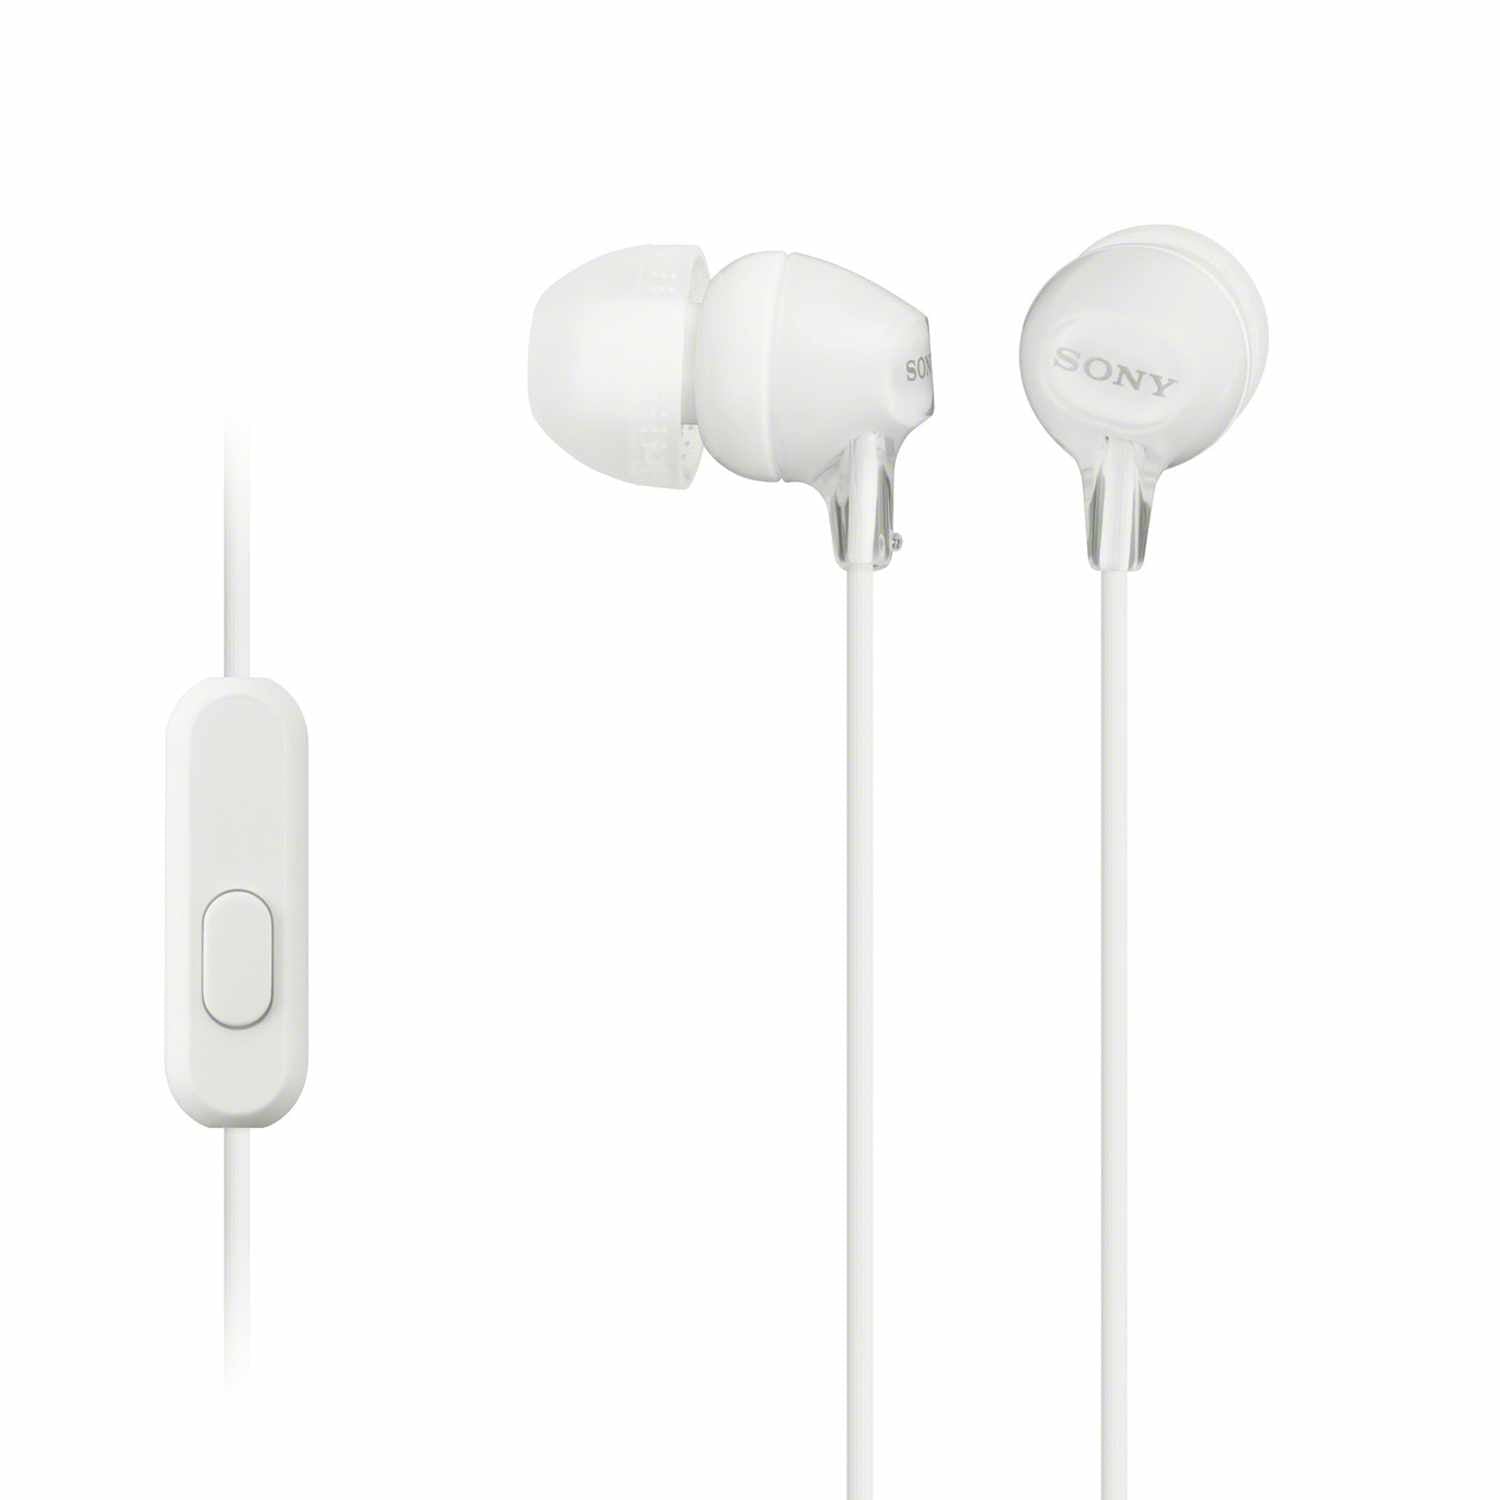 Sony In Ear Headphones